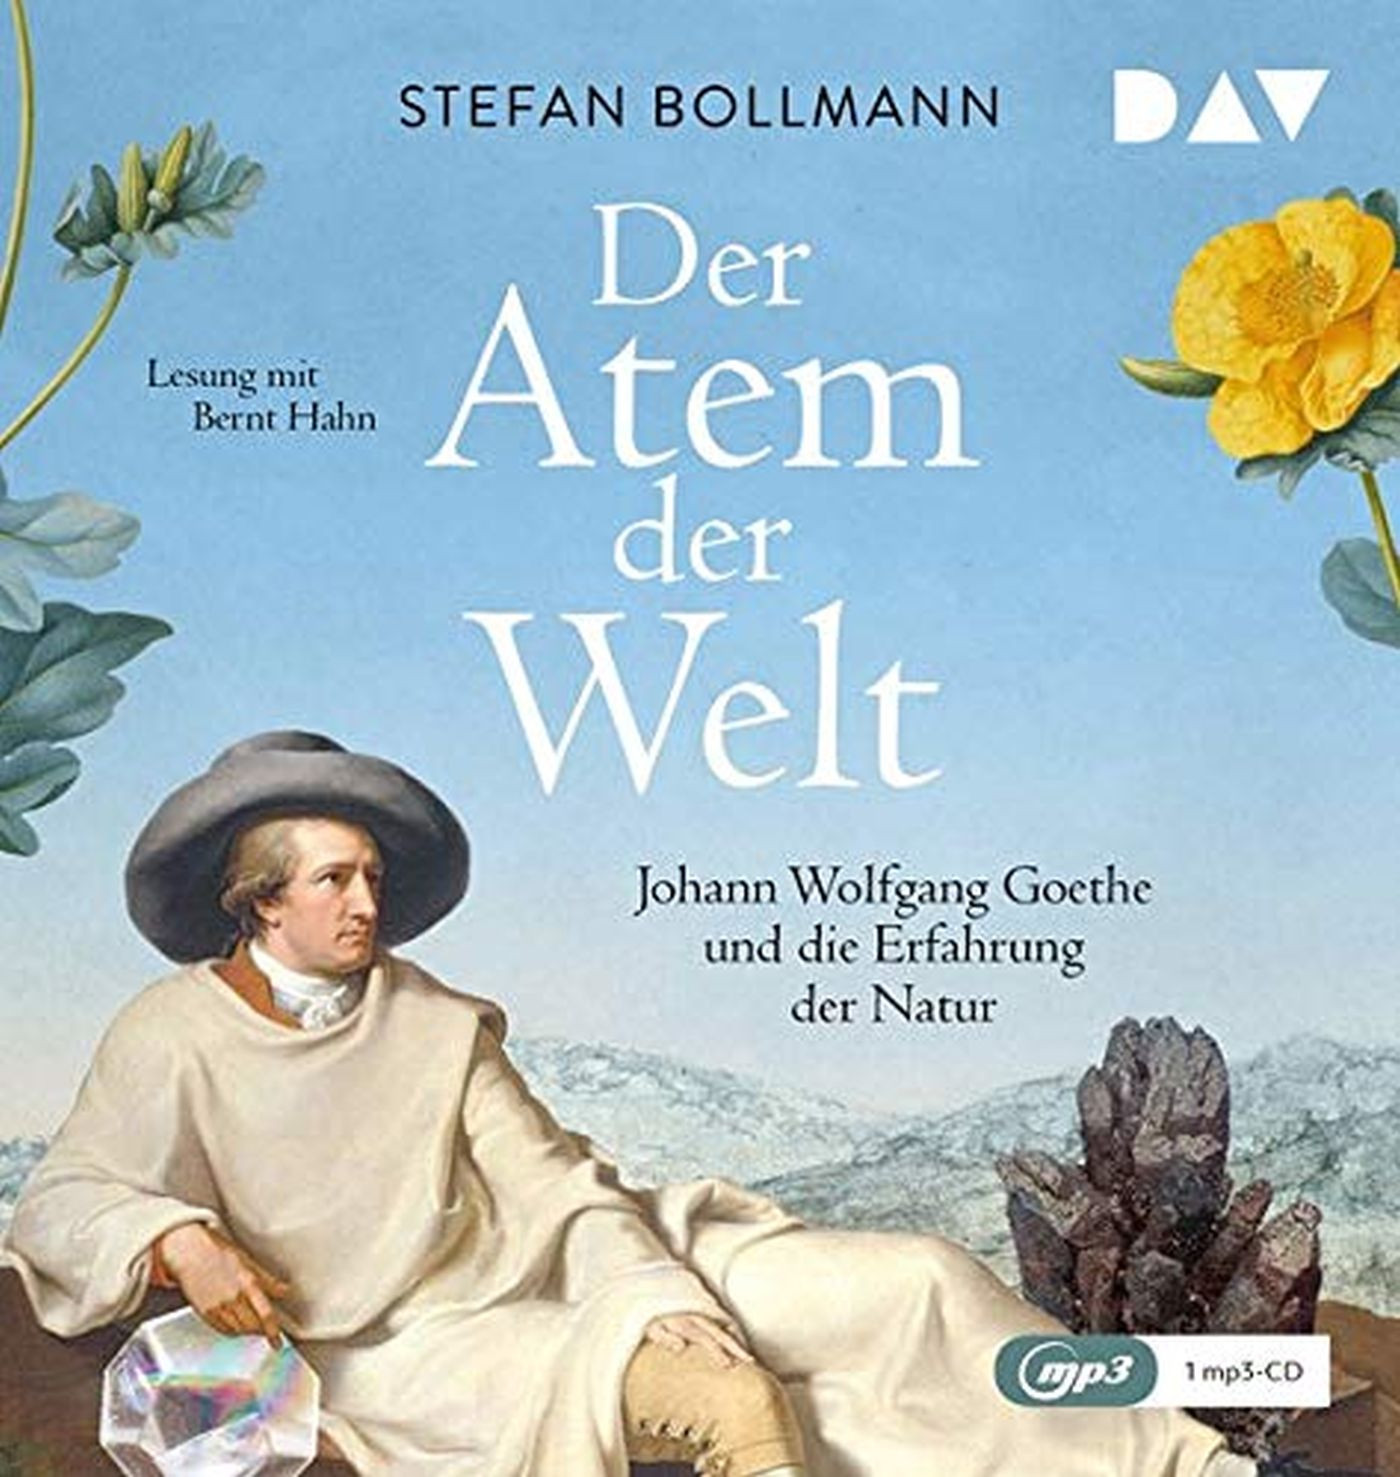 Stefan Bollmann - Der Atem der Welt. Johann Wolfgang Goethe und die Erfahrung der Natur